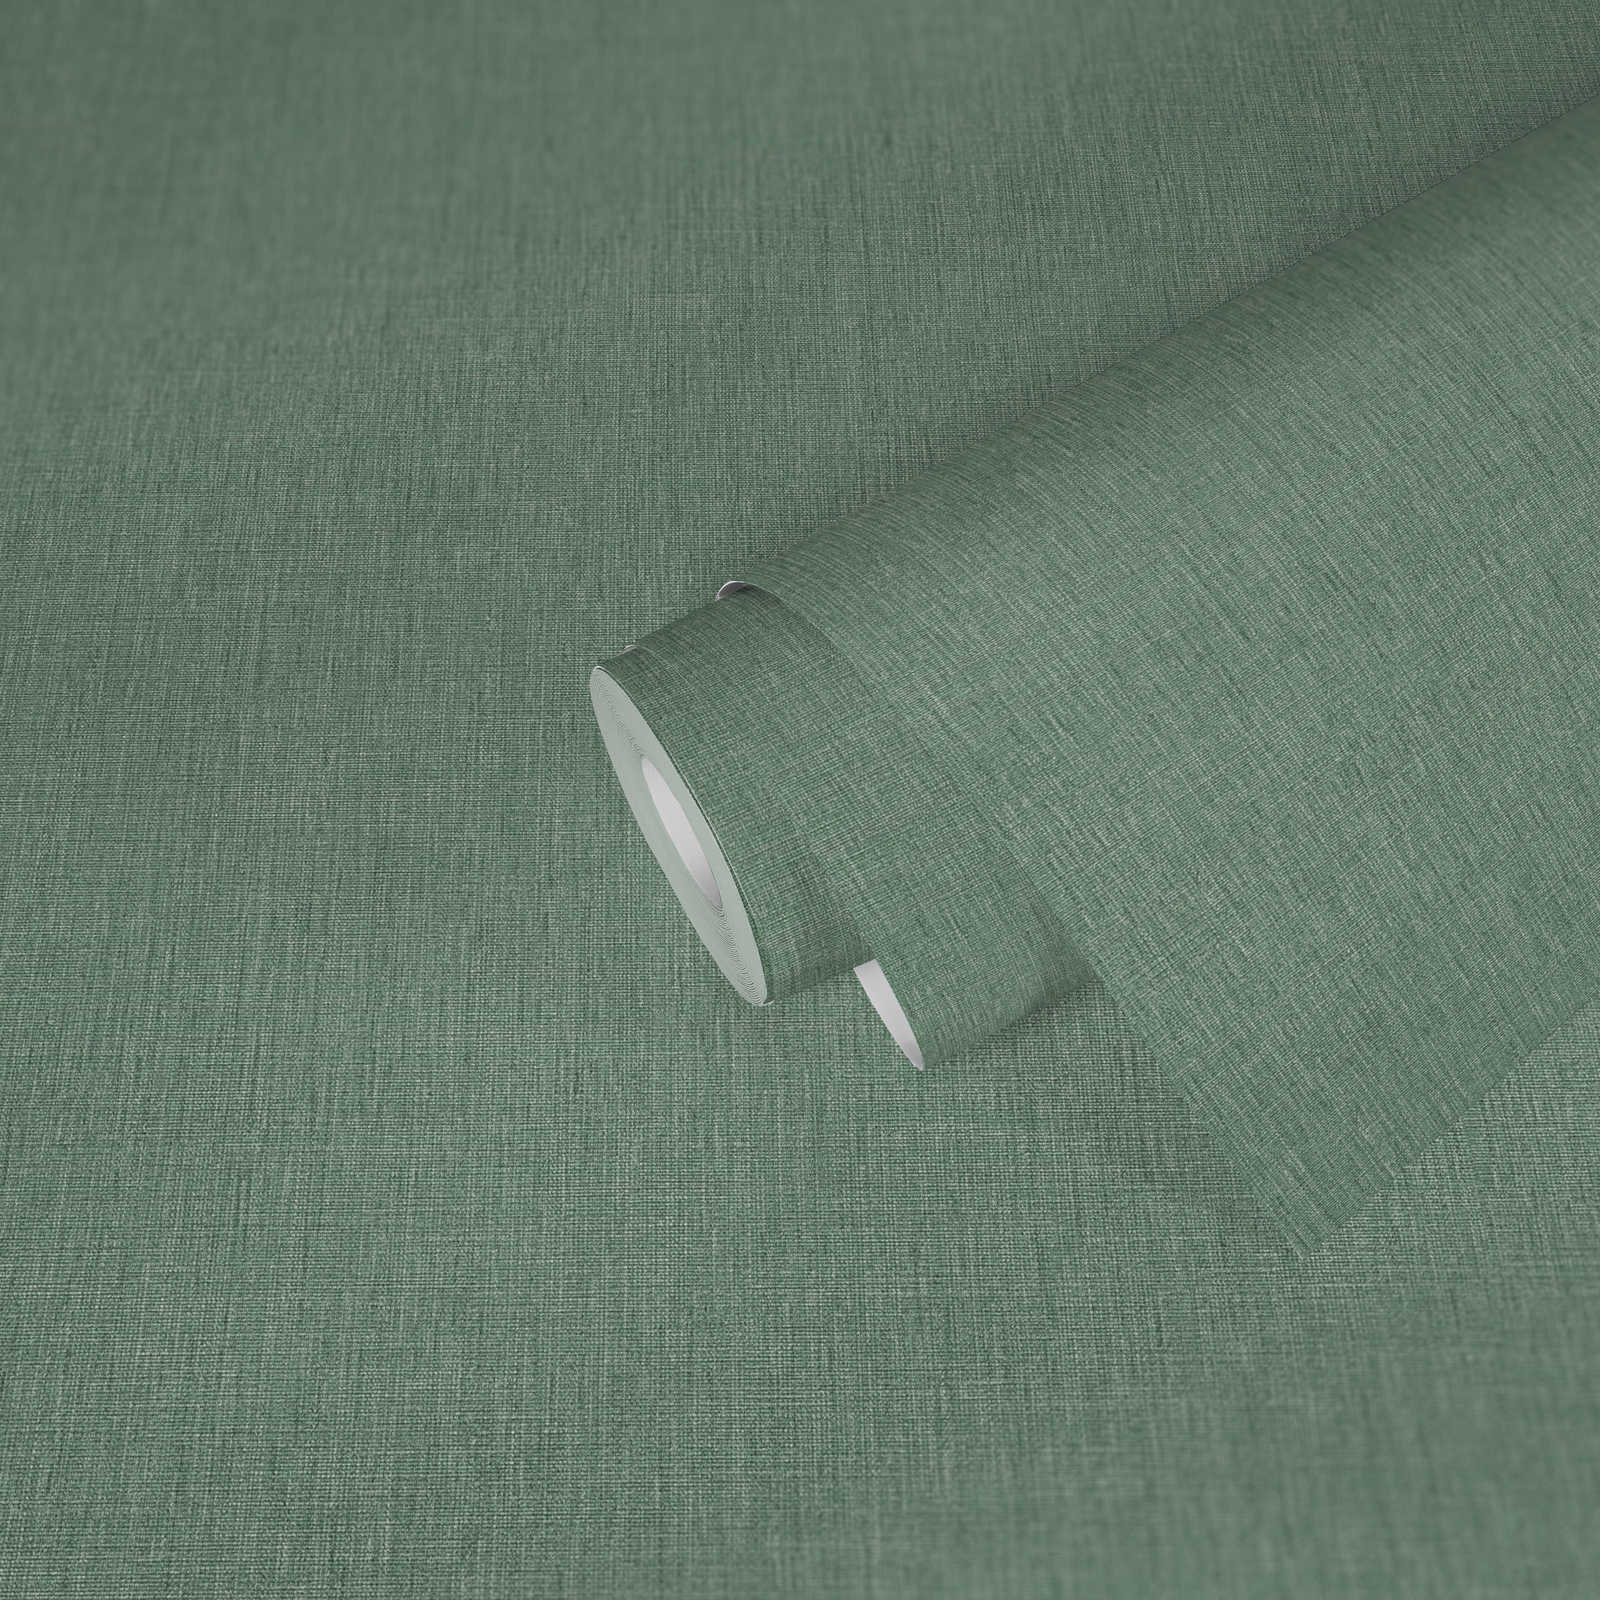             Papel pintado unitario de aspecto textil con textura - verde
        